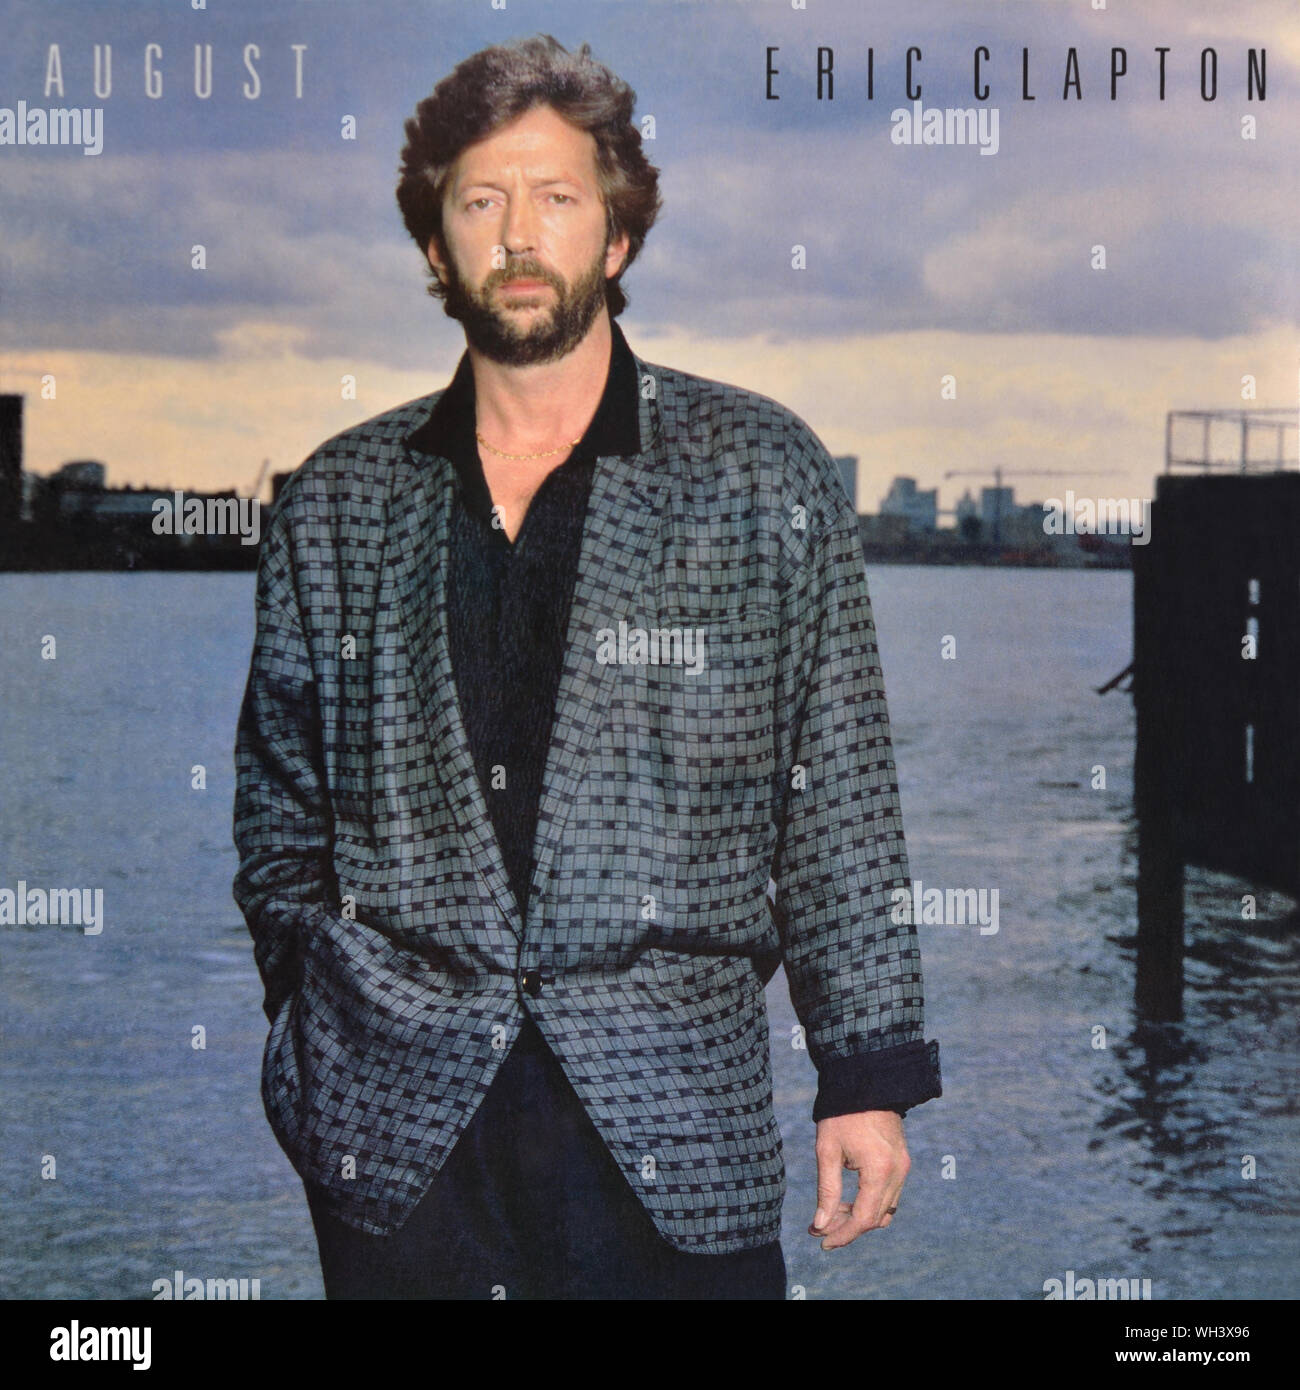 Eric Clapton - original Vinyl Album Cover - August - 1986 Stockfoto